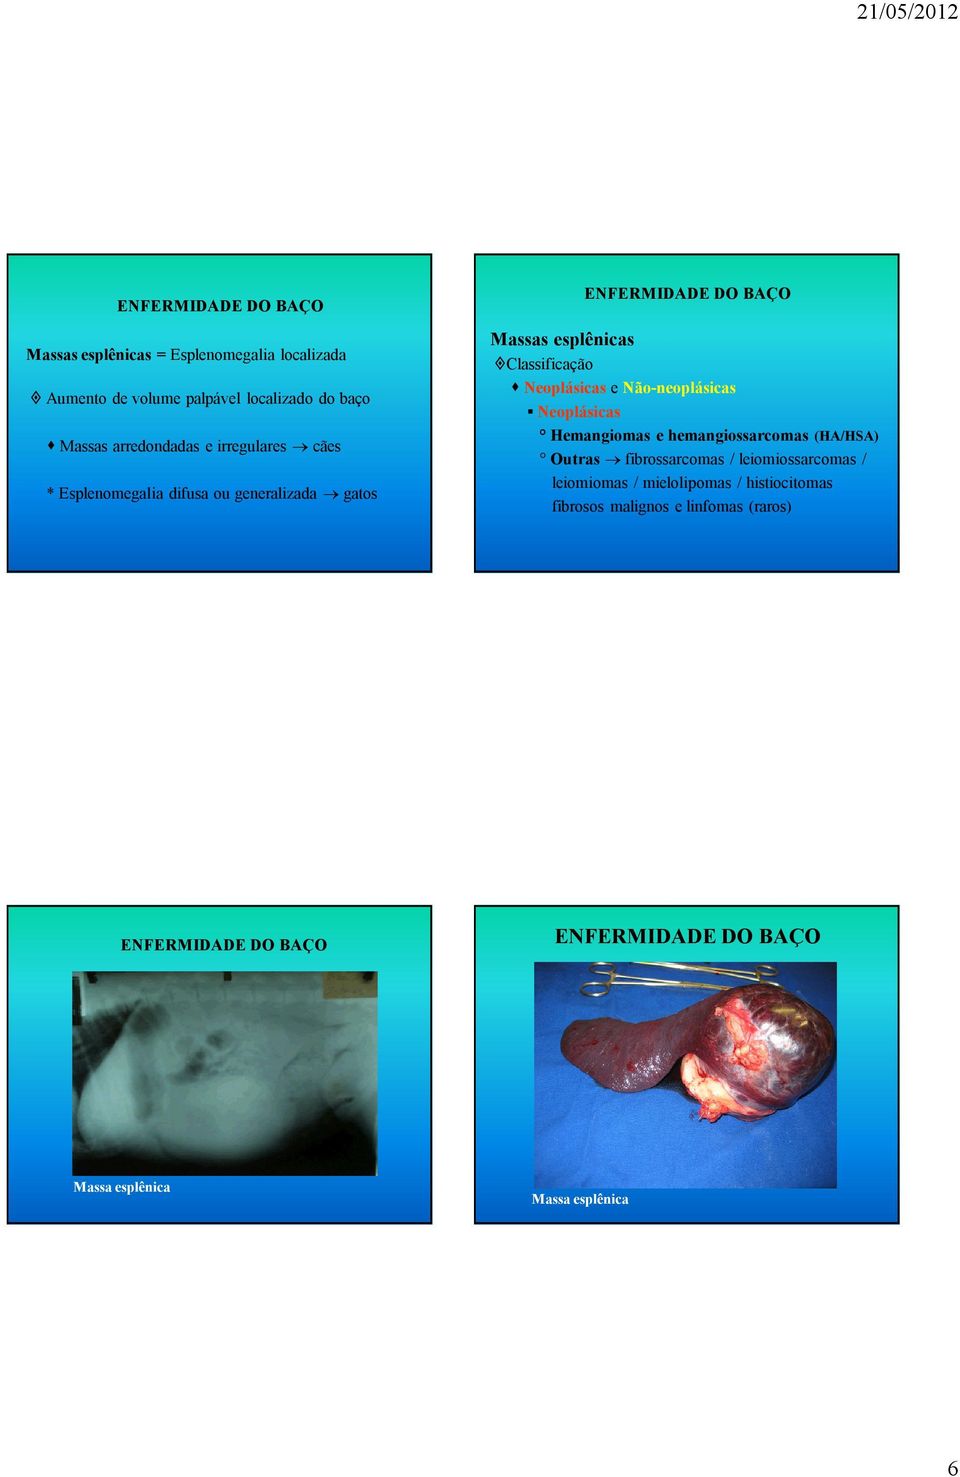 Não-neoplásicas Neoplásicas Hemangiomas e hemangiossarcomas (HA/HSA) Outras fibrossarcomas /